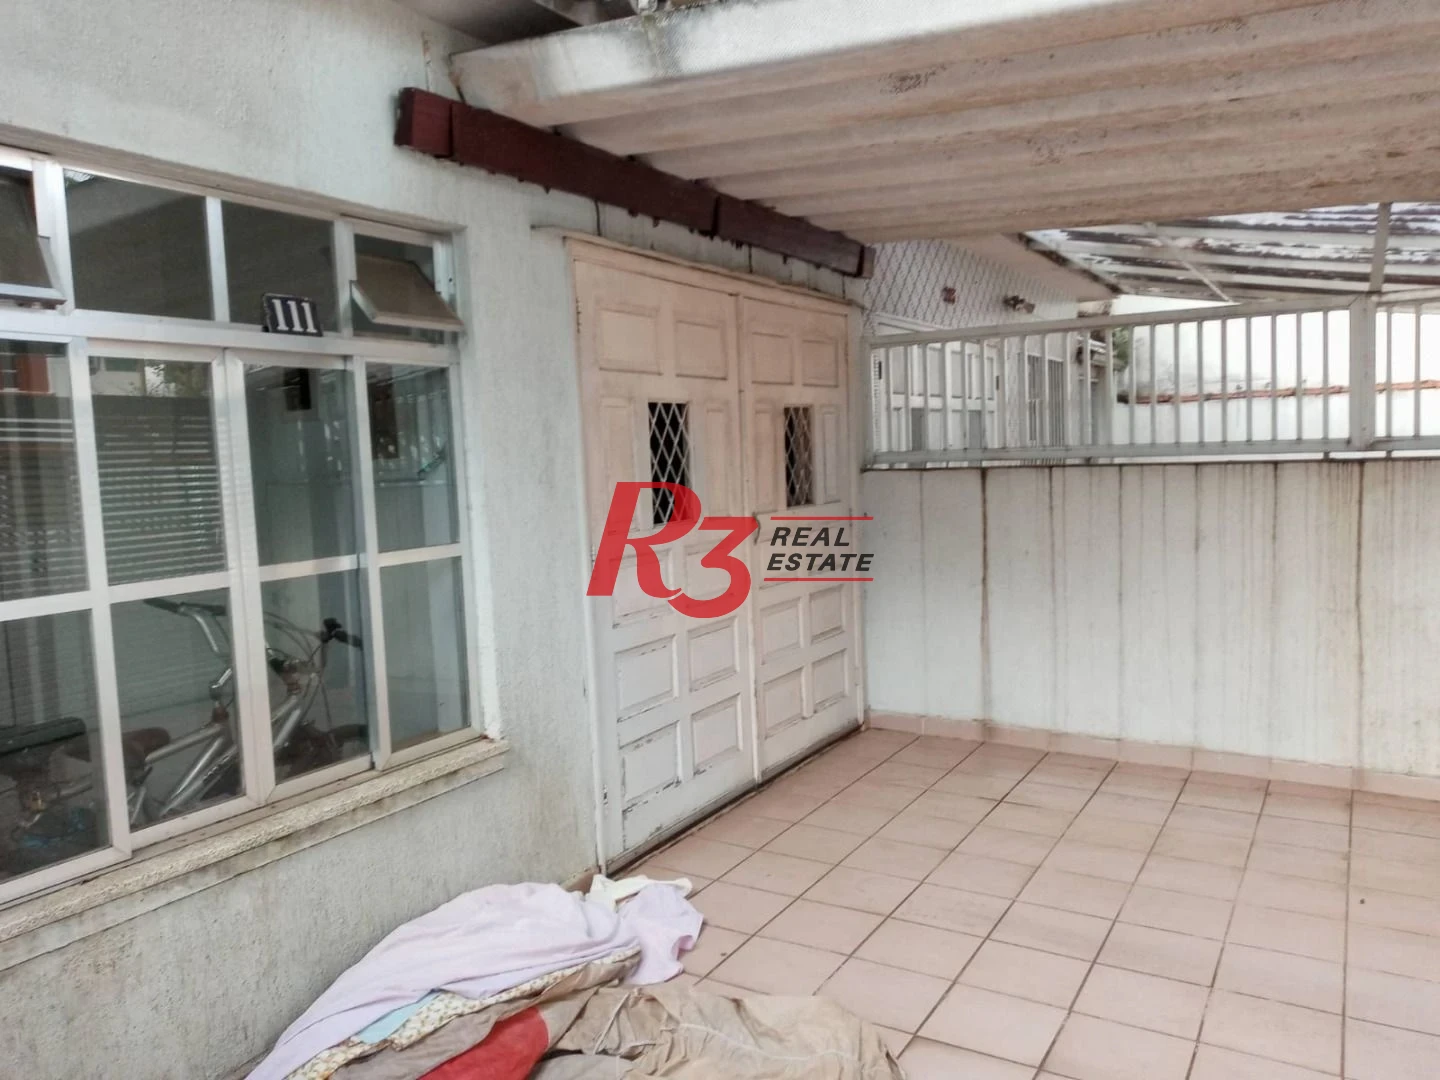 Excelente casa geminada à venda, 4 dormitórios no Embaré em Santos-SP